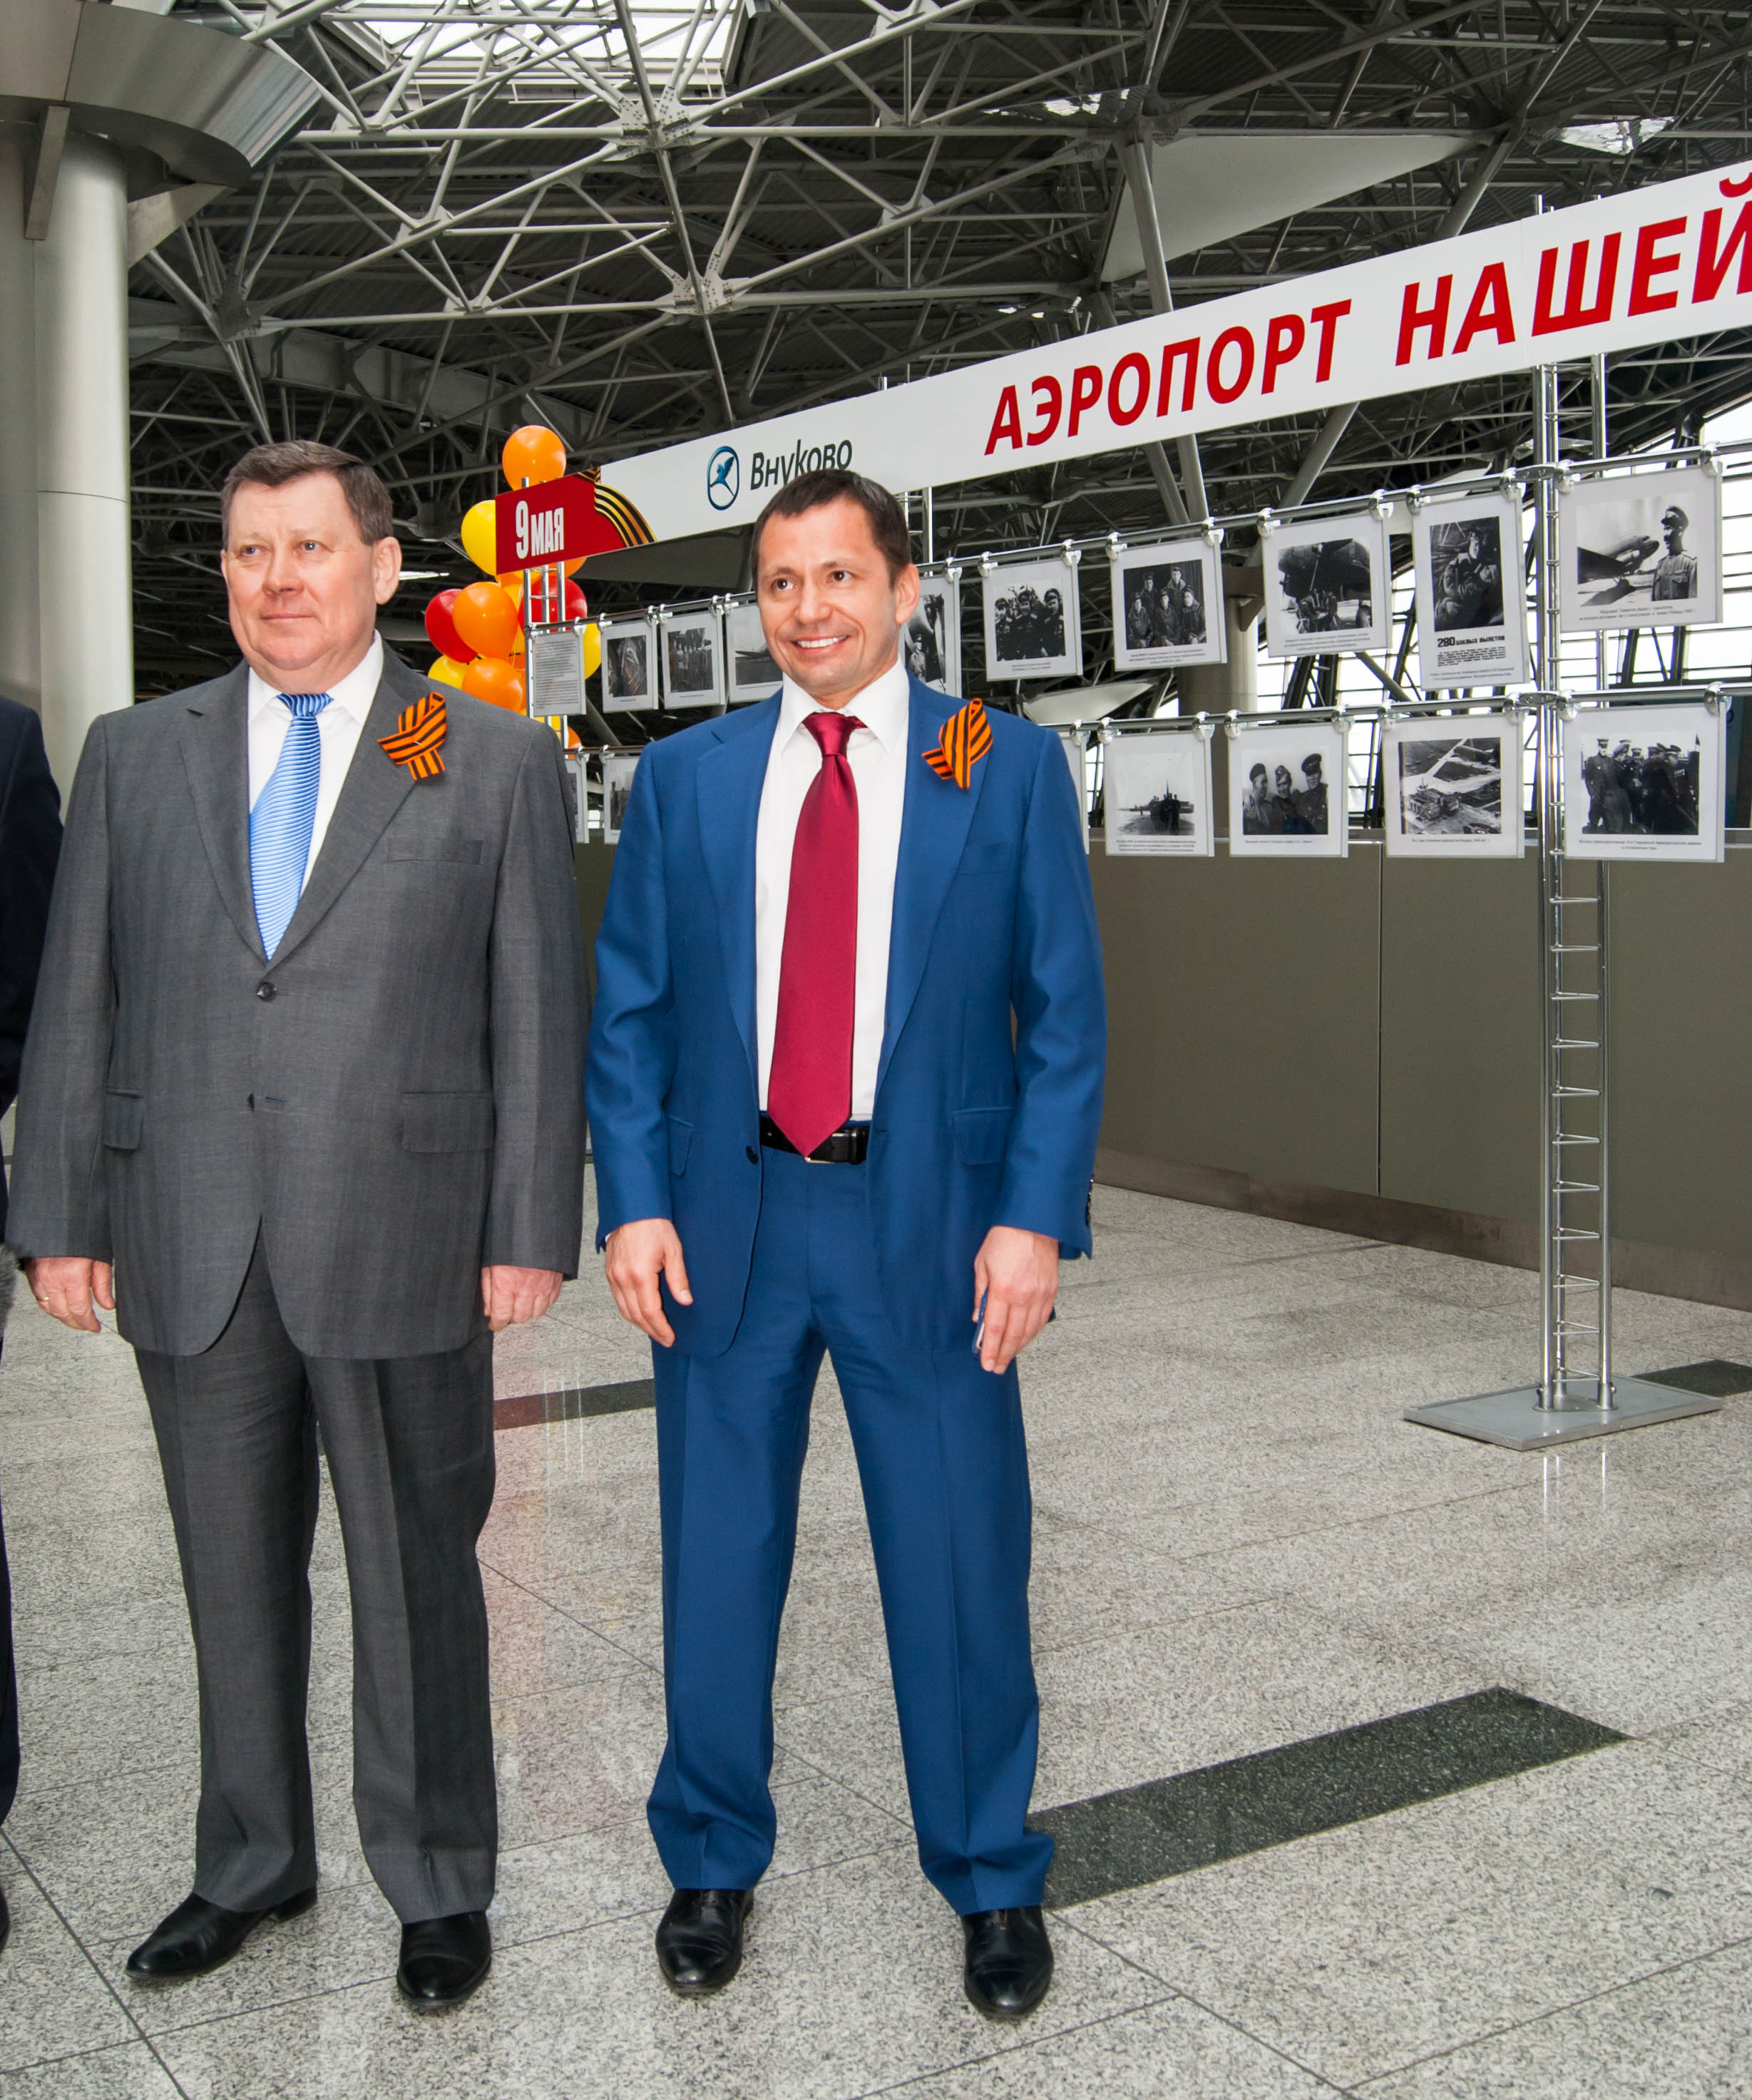 Мультимедийная фотовыставка «Победа! 70 лет» открылась в аэропорту Внуково | Международный аэропорт Внуково